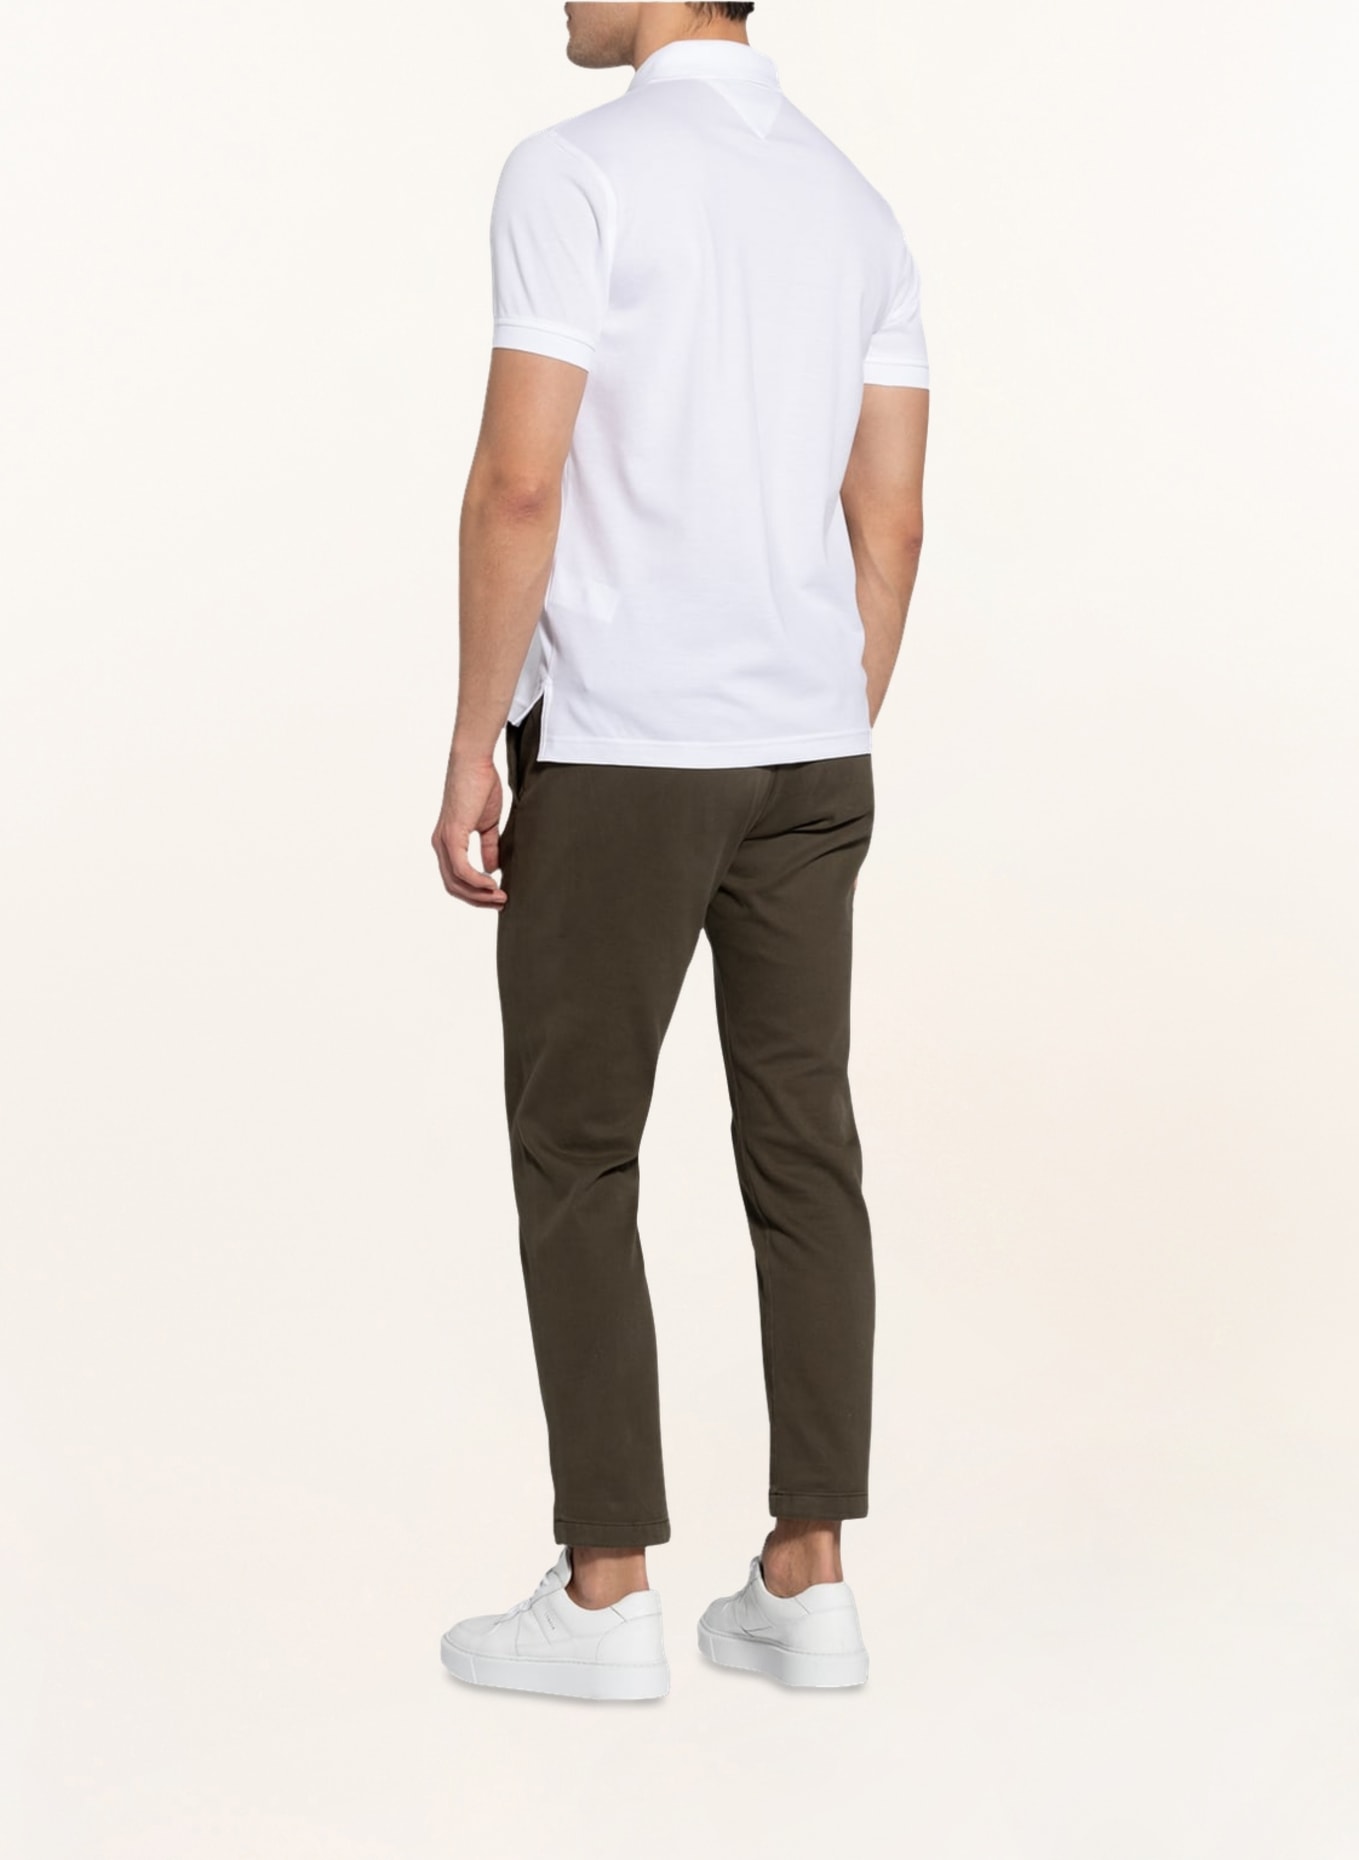 TOMMY HILFIGER Piqué-Poloshirt Regular Fit, Farbe: WEISS (Bild 4)